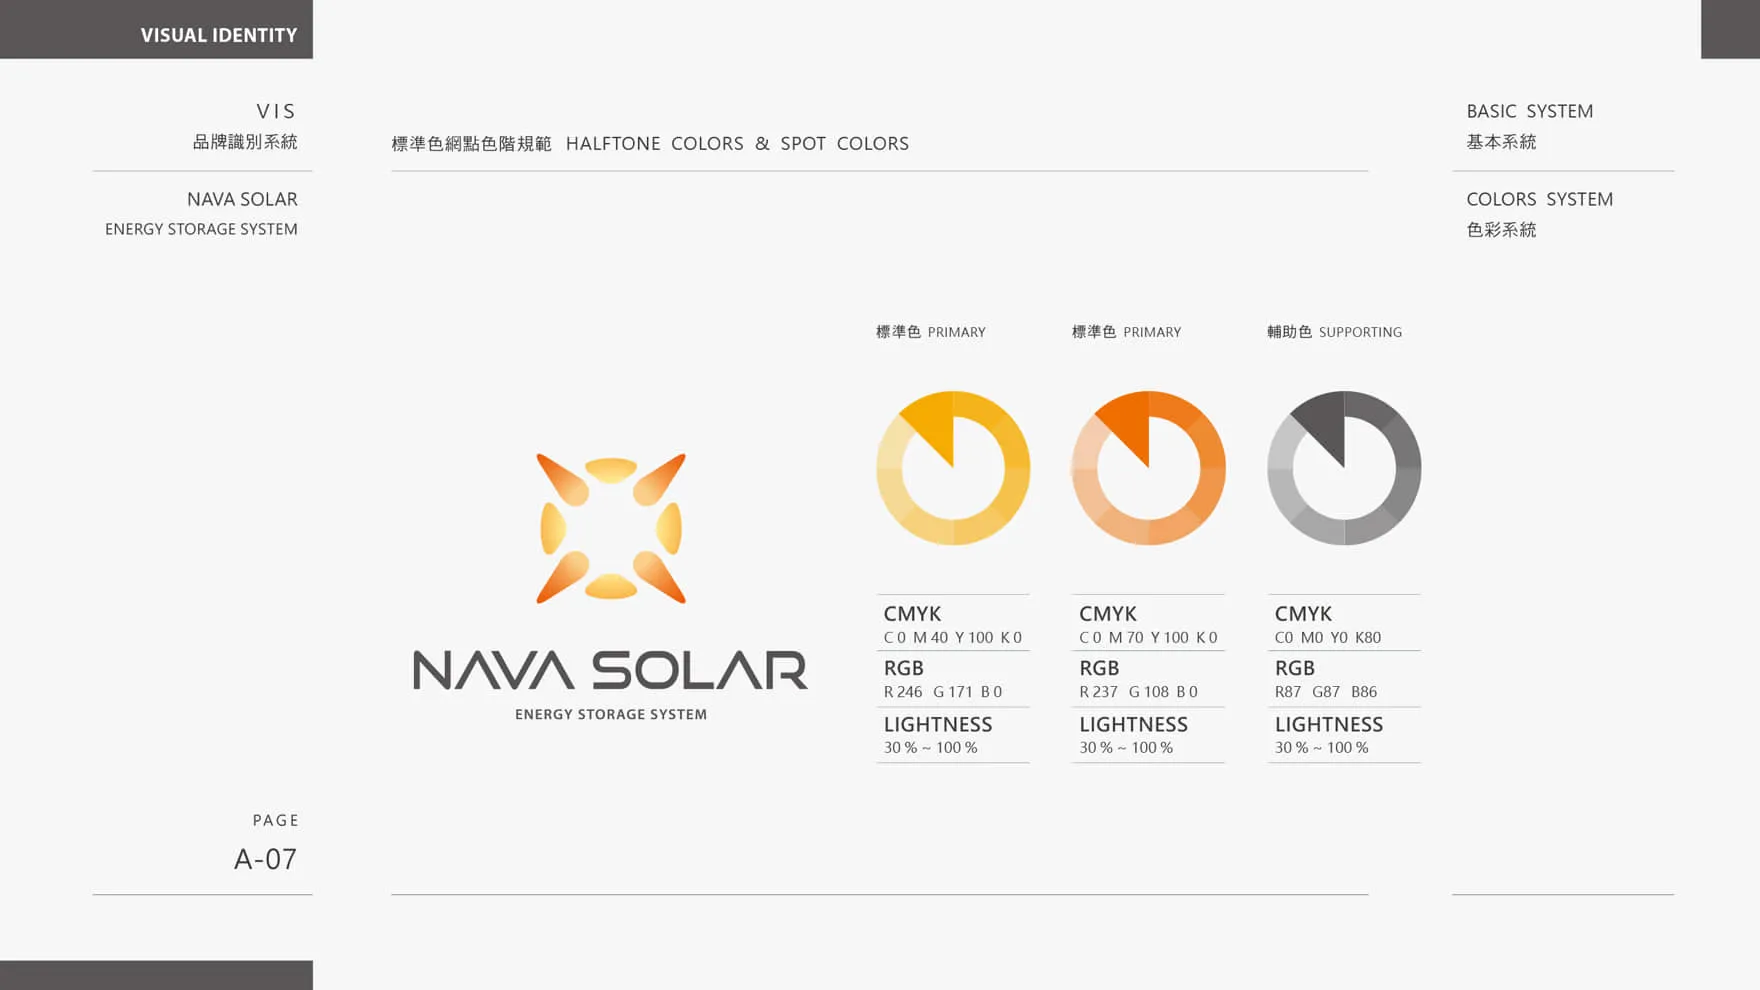 太陽能光電品牌LOGO標準色輔助色色階規範